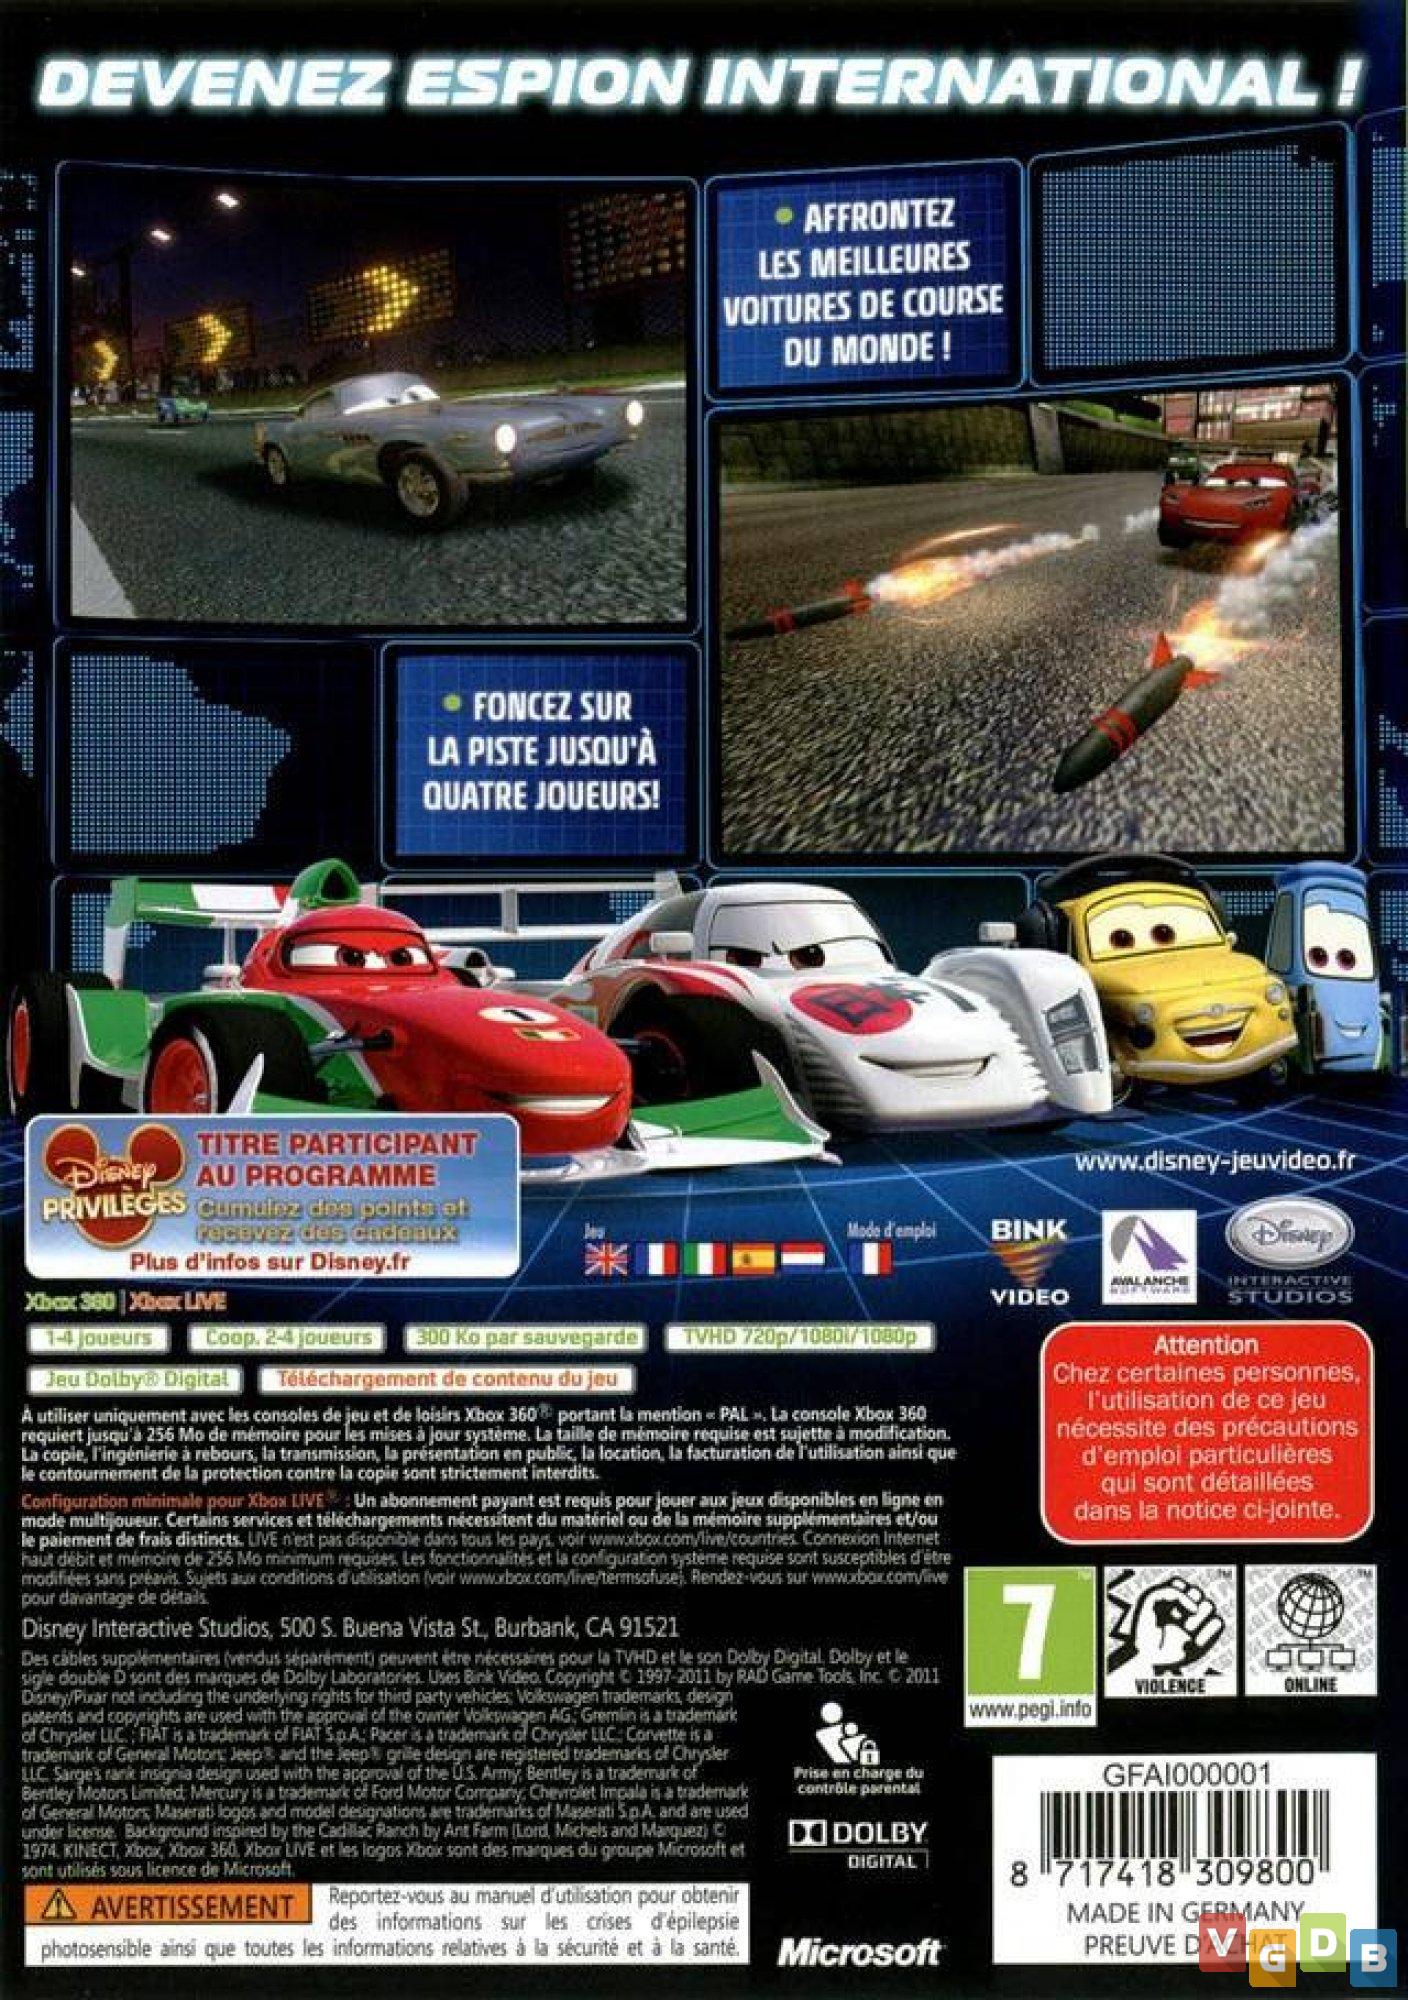 CARS 2 (PS3/XBOX 360/PC/Wii) #12 - O FINAL DO JOGO DO FILME CARROS